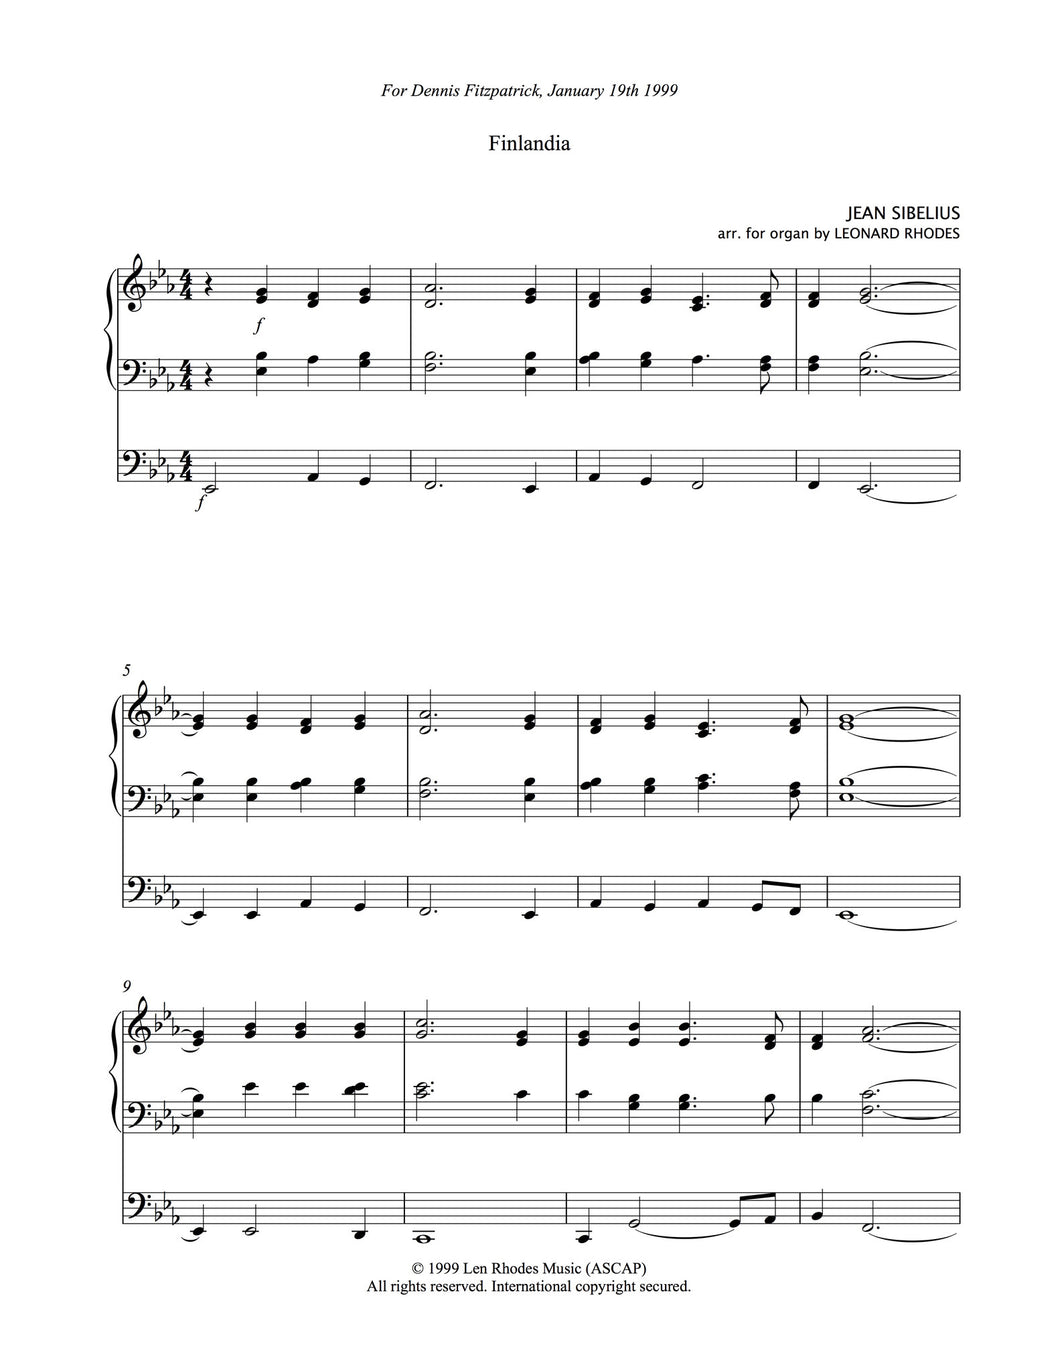 Finlandia, Sibelius - easy Organ